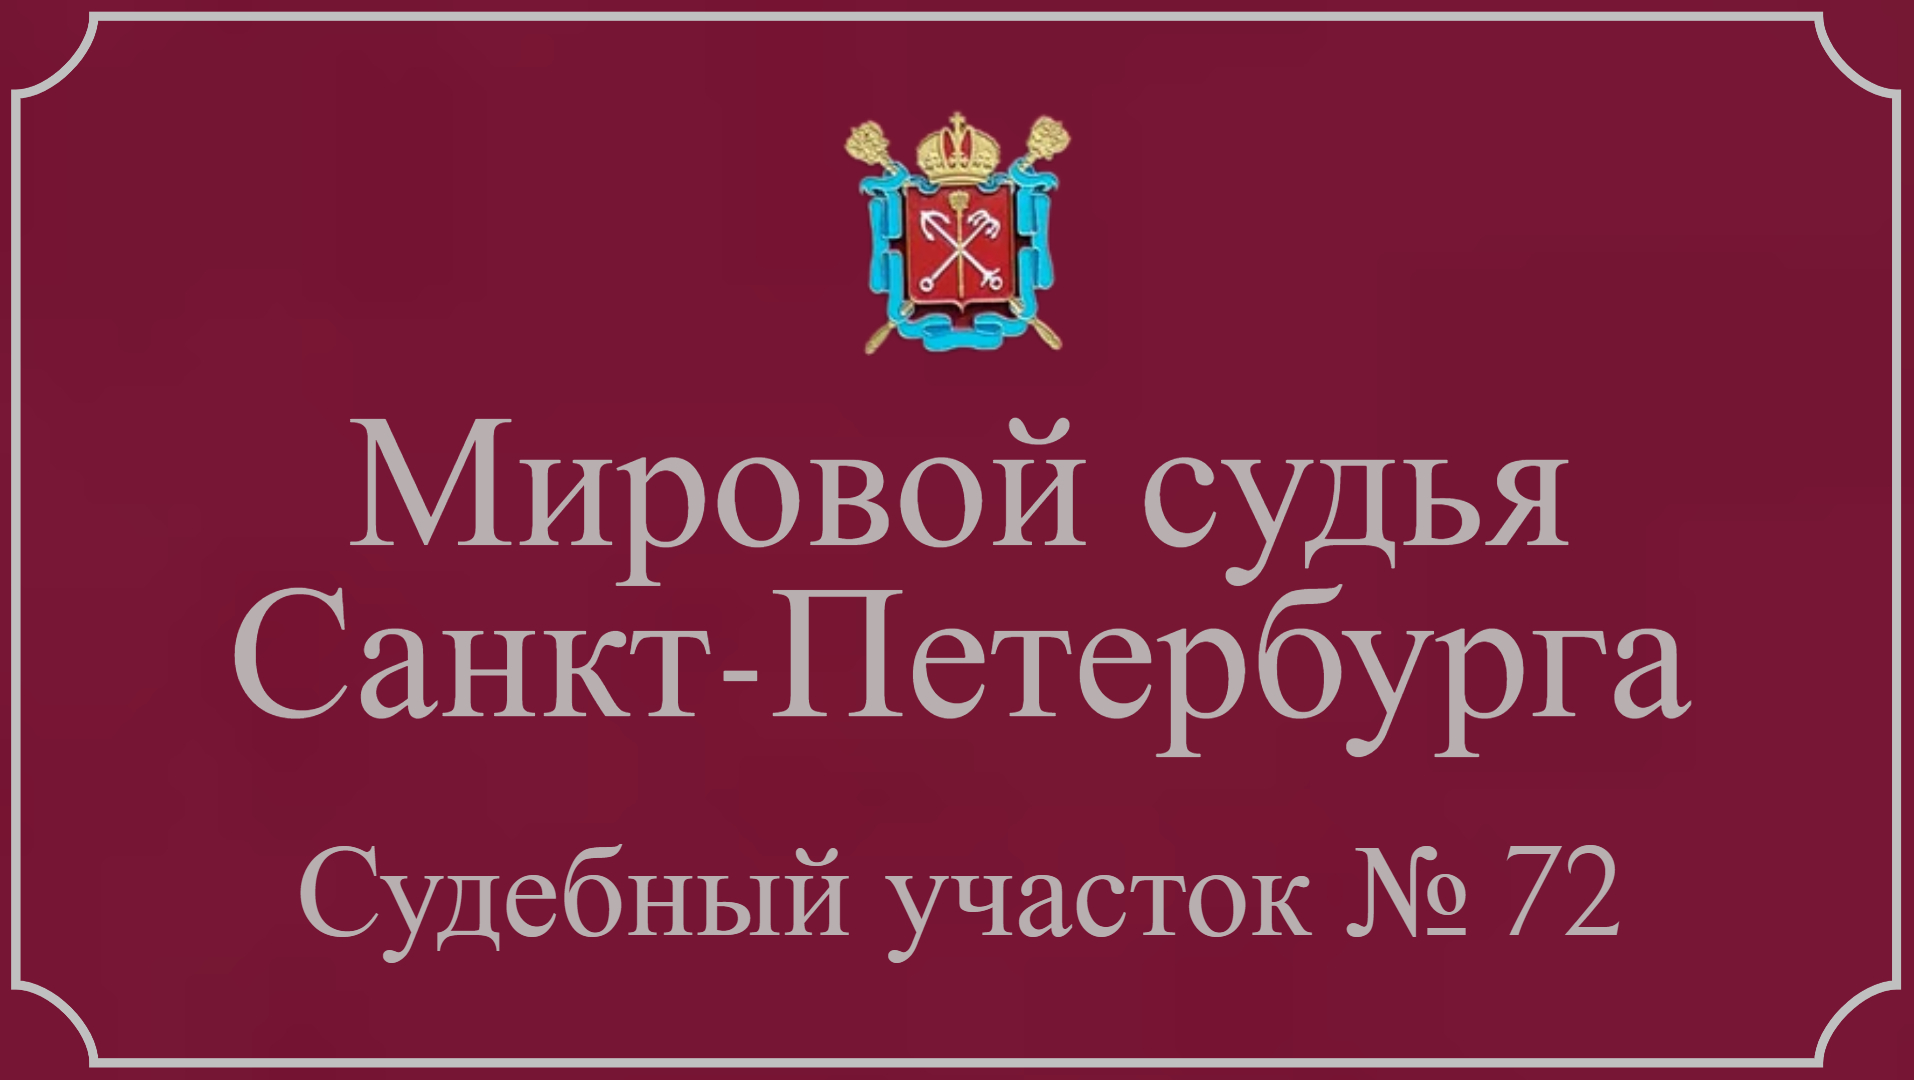 Информация по 72 судебному участку в Санкт-Петербурге.